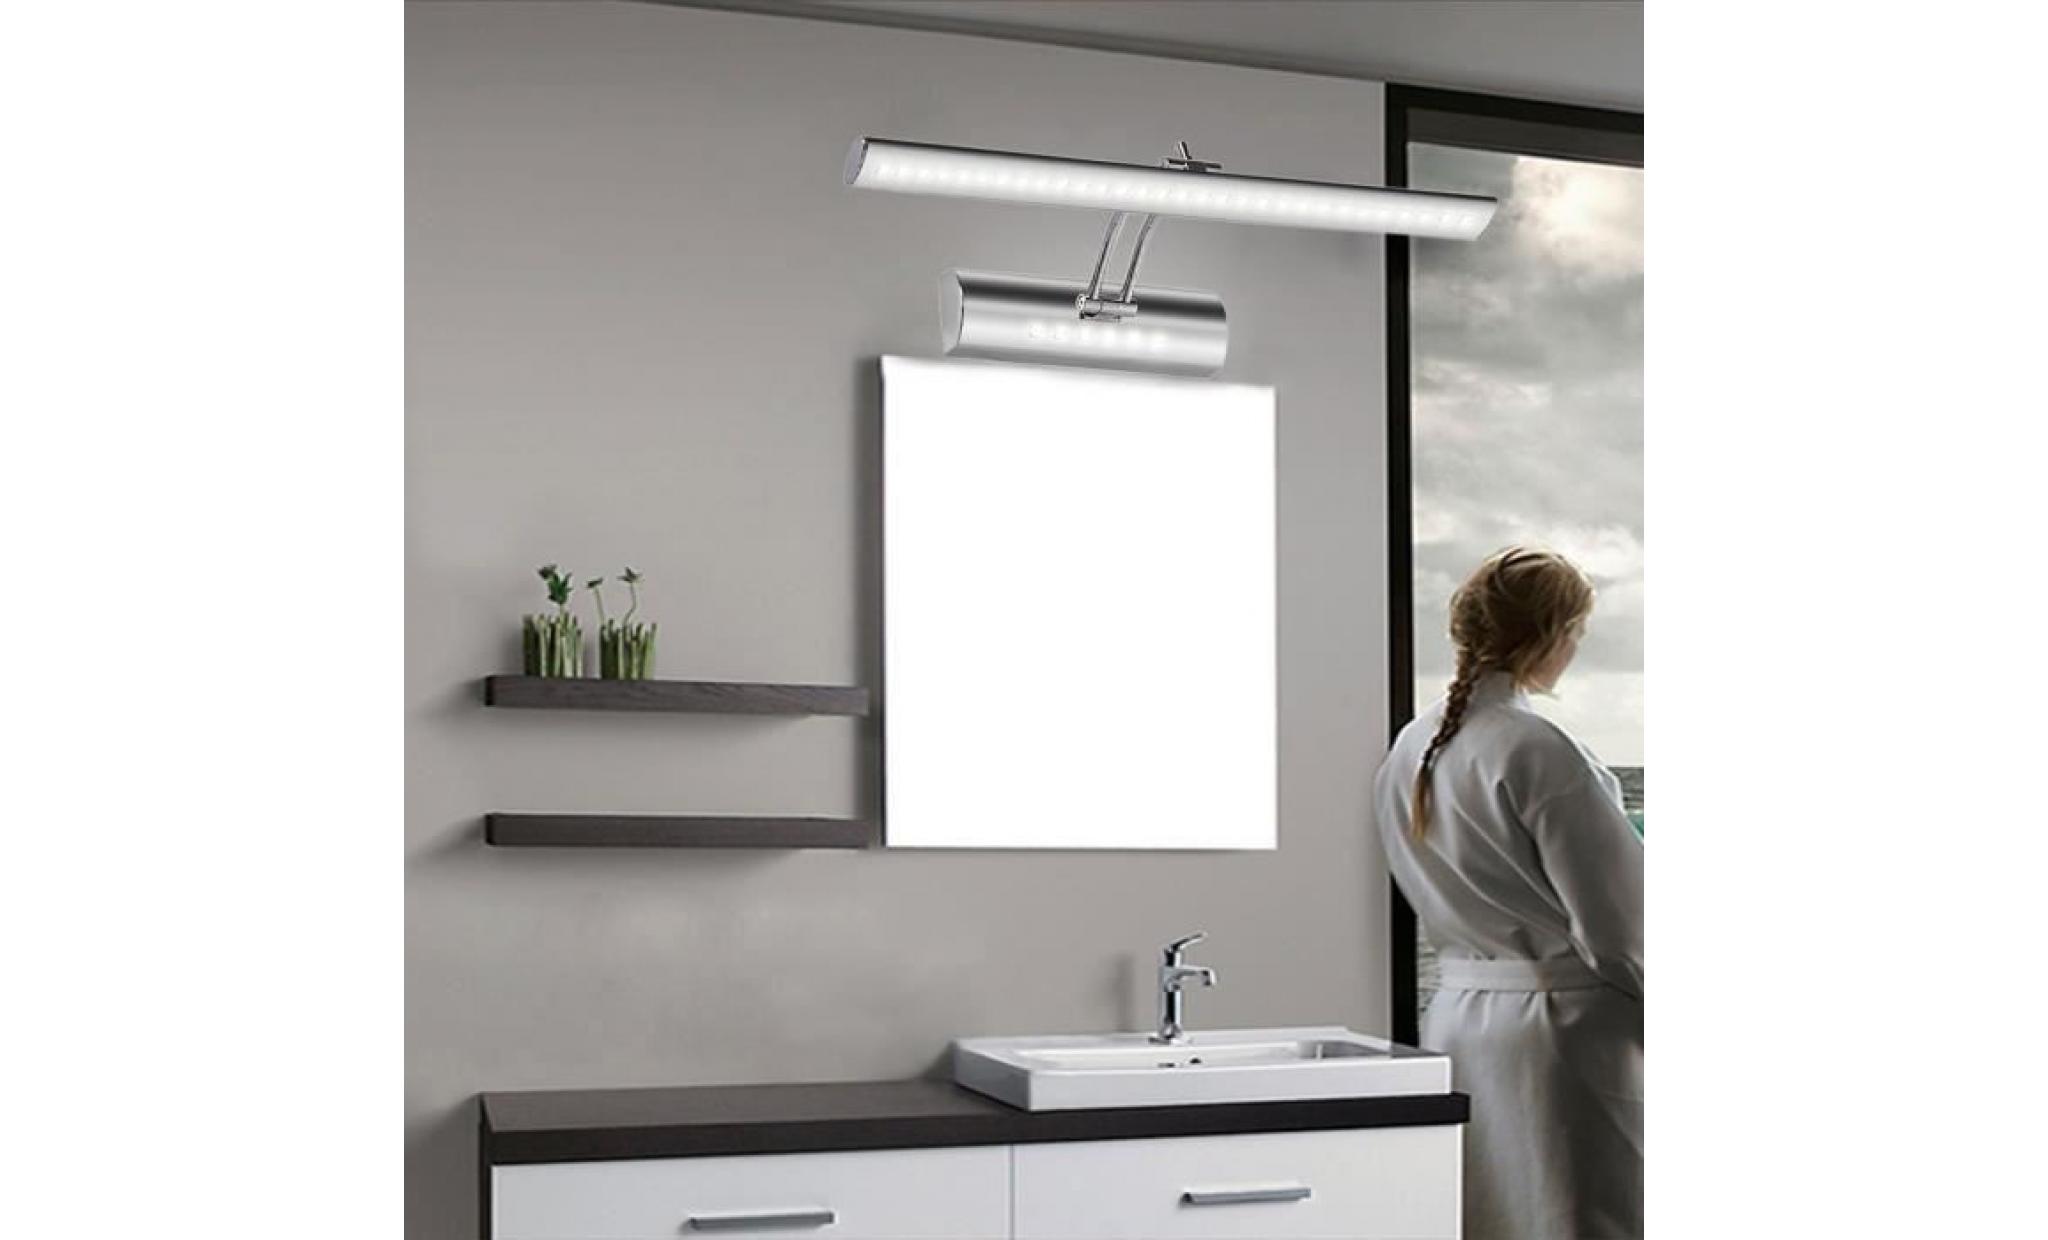 lampe ampoule 36leds smd5050 lumière blanc 7w pour salle de bain miroir tableau mur mural applique [classe énergétique a]   pas cher